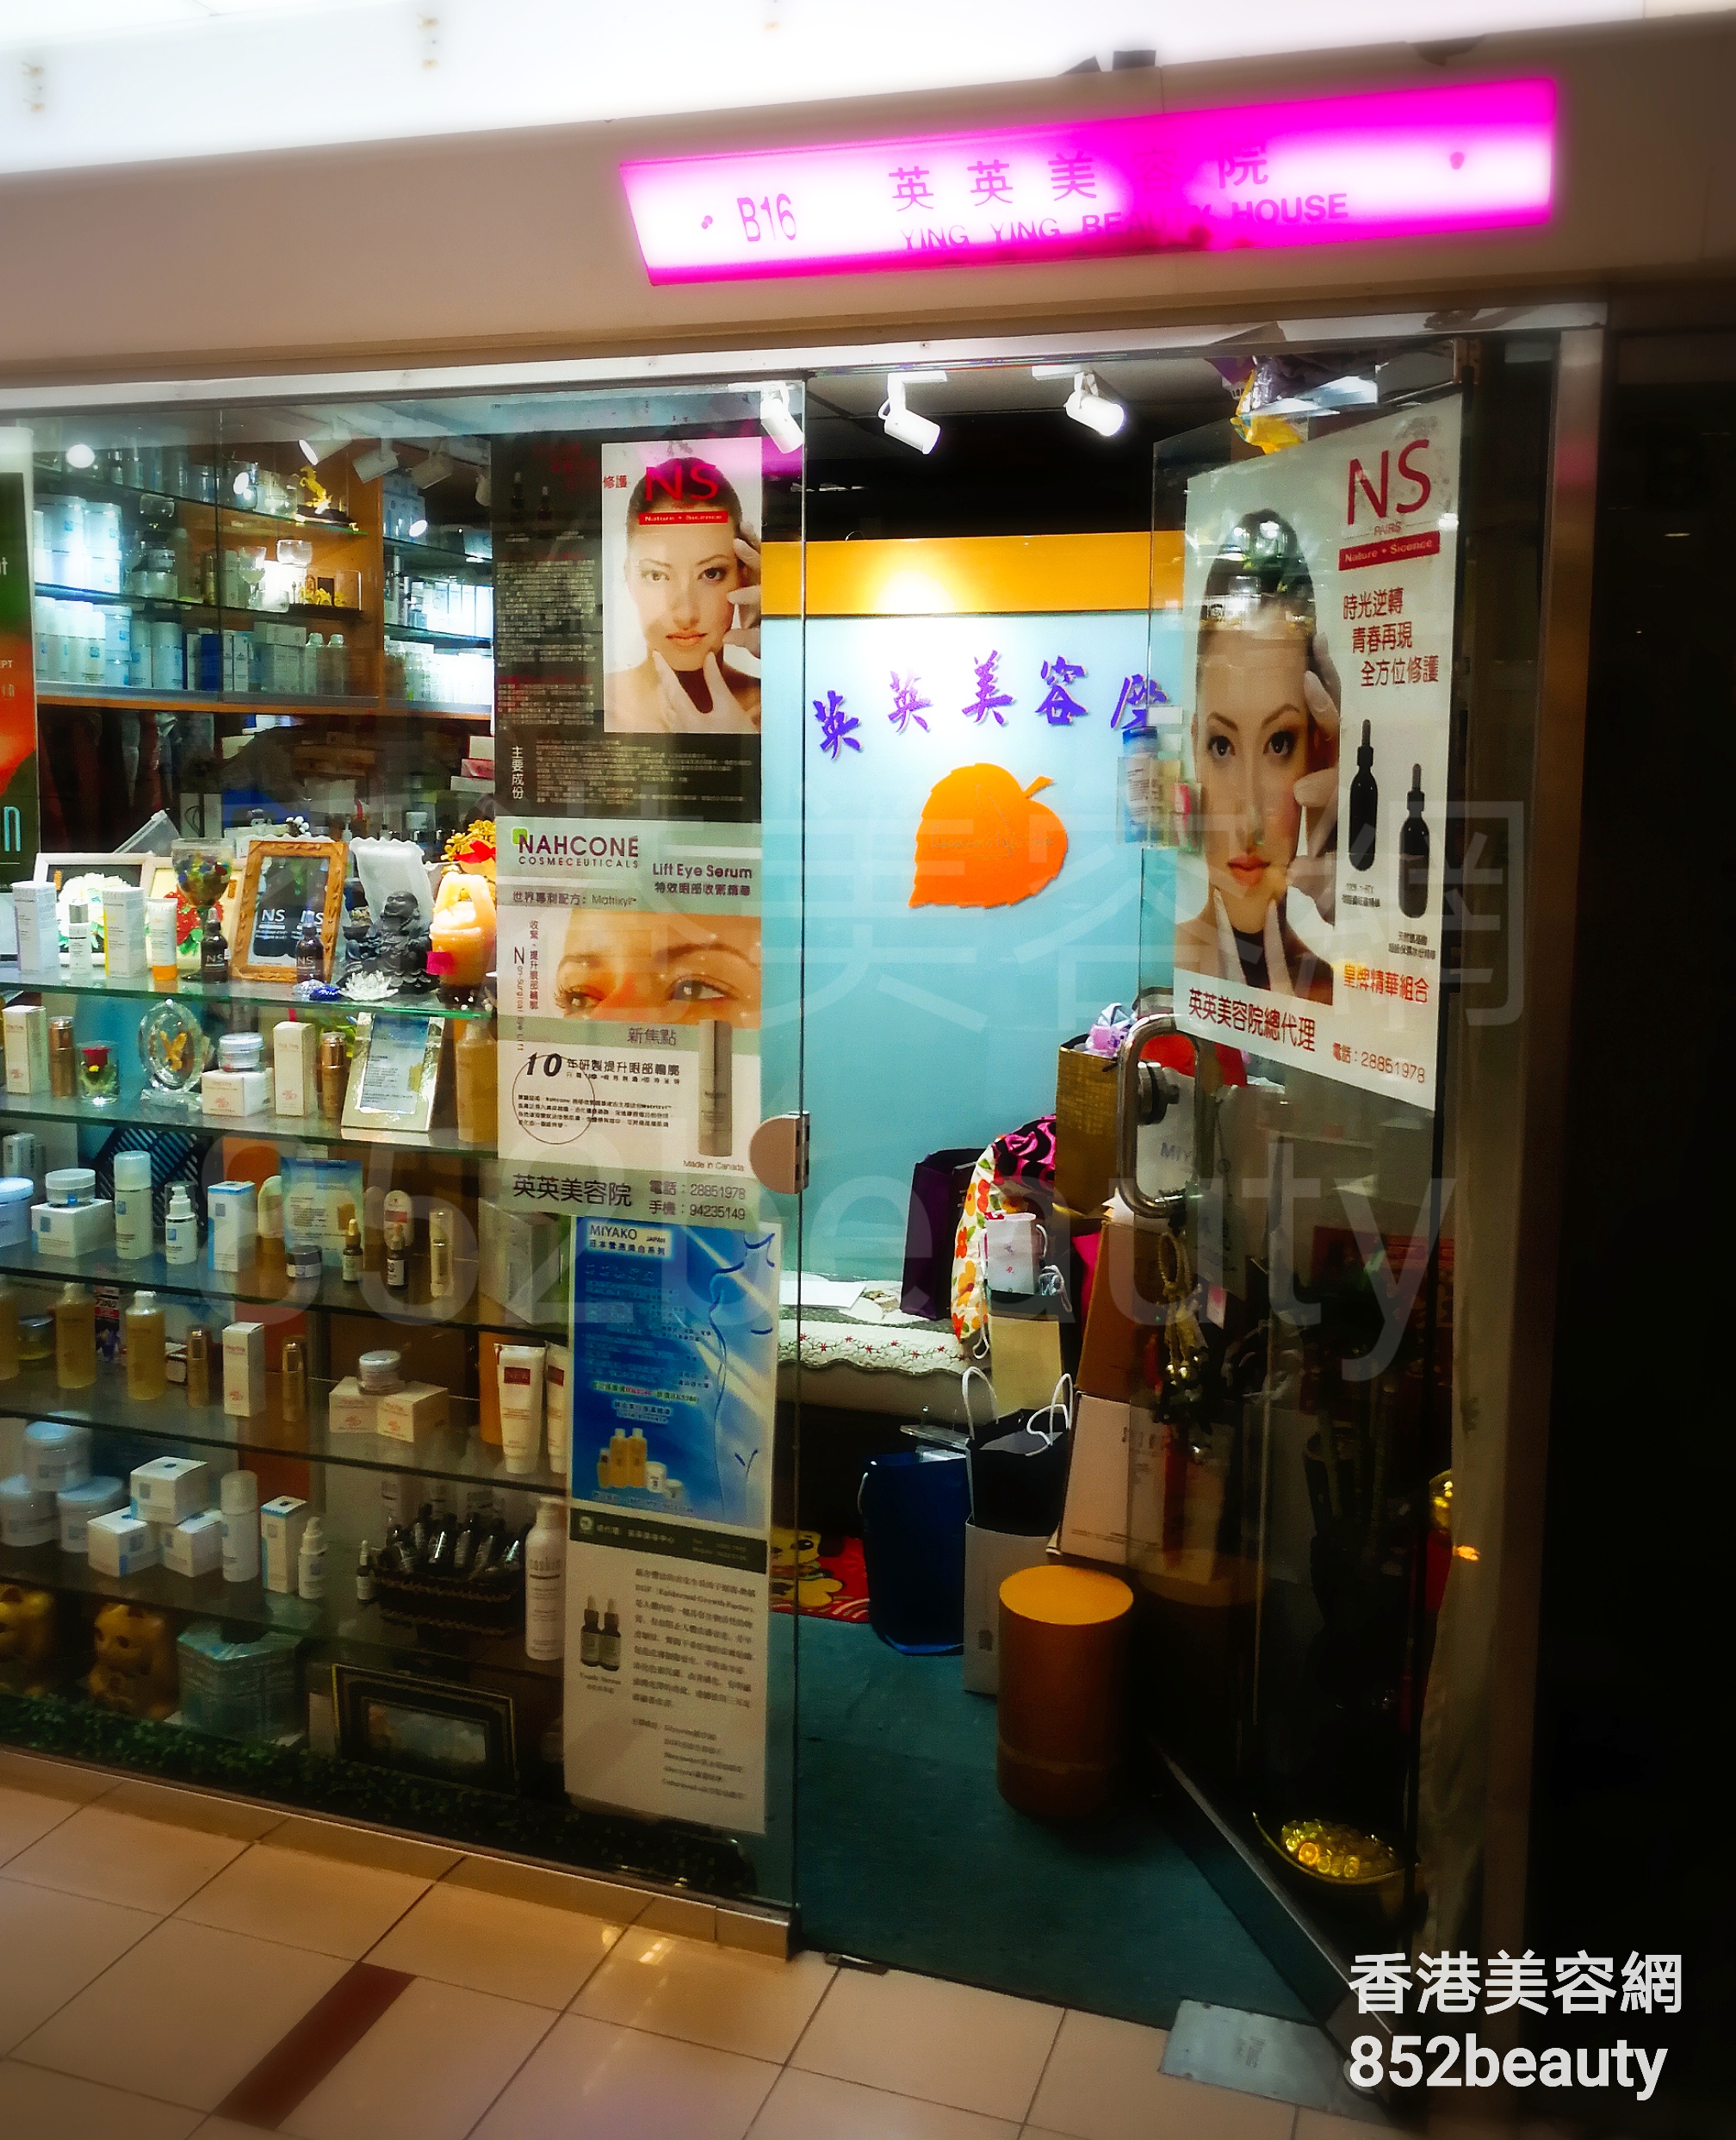 香港美容網 Hong Kong Beauty Salon 美容院 / 美容師: 英英美容院